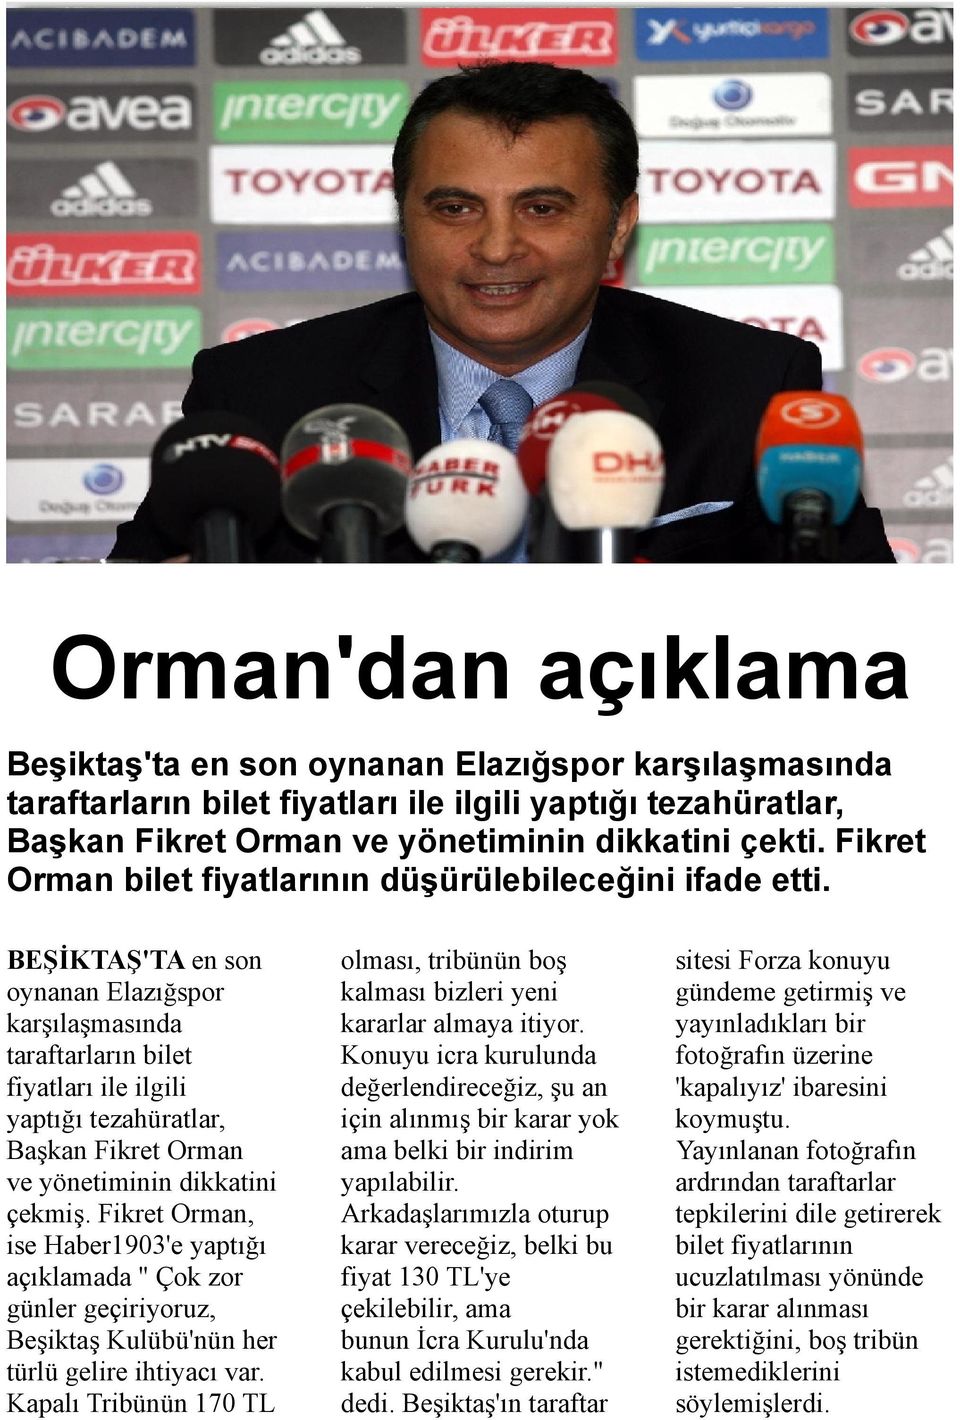 BEŞİKTAŞ'TA en son oynanan Elazığspor karşılaşmasında taraftarların bilet fiyatları ile ilgili yaptığı tezahüratlar, Başkan Fikret Orman ve yönetiminin dikkatini çekmiş.